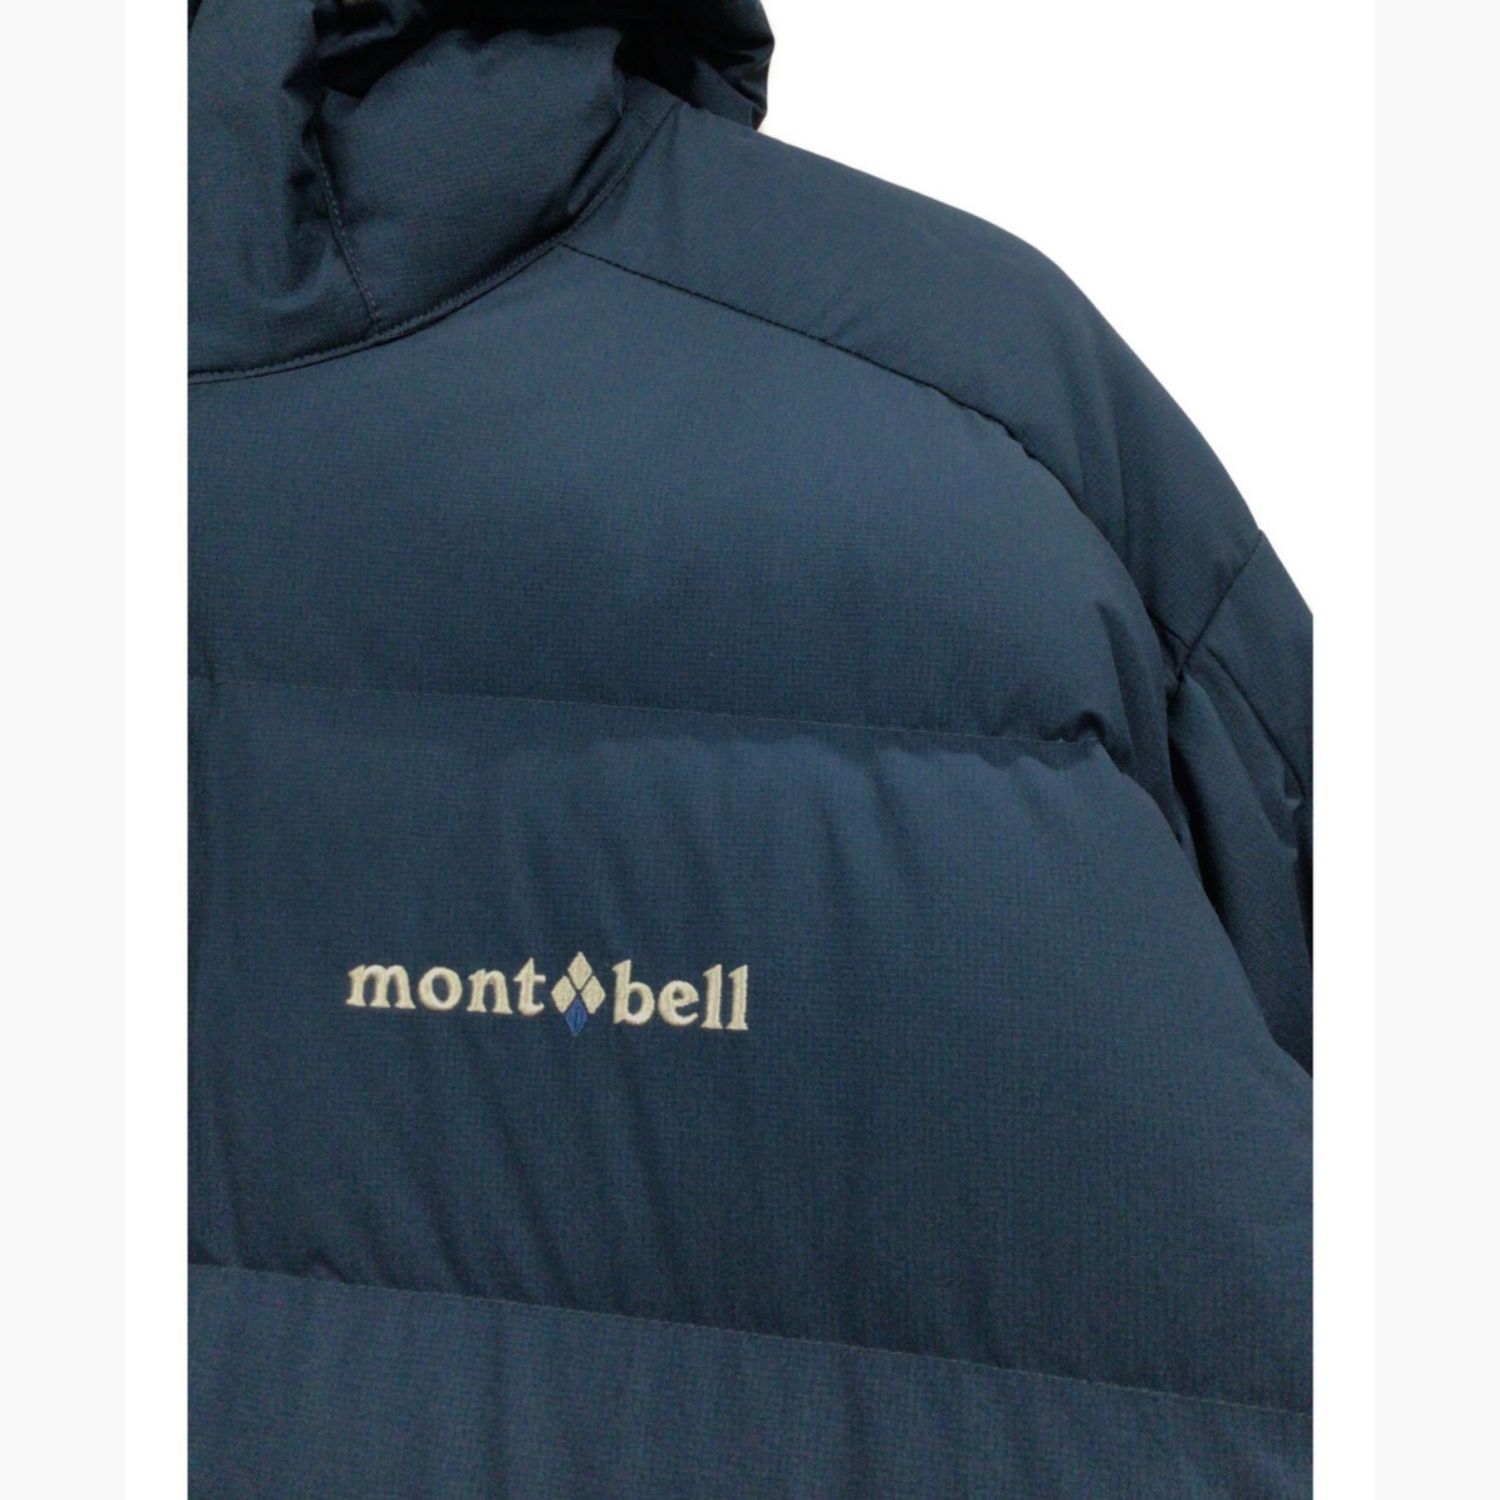 mont-bell (モンベル) トレッキングウェア(ジャケット) メンズ SIZE XL 